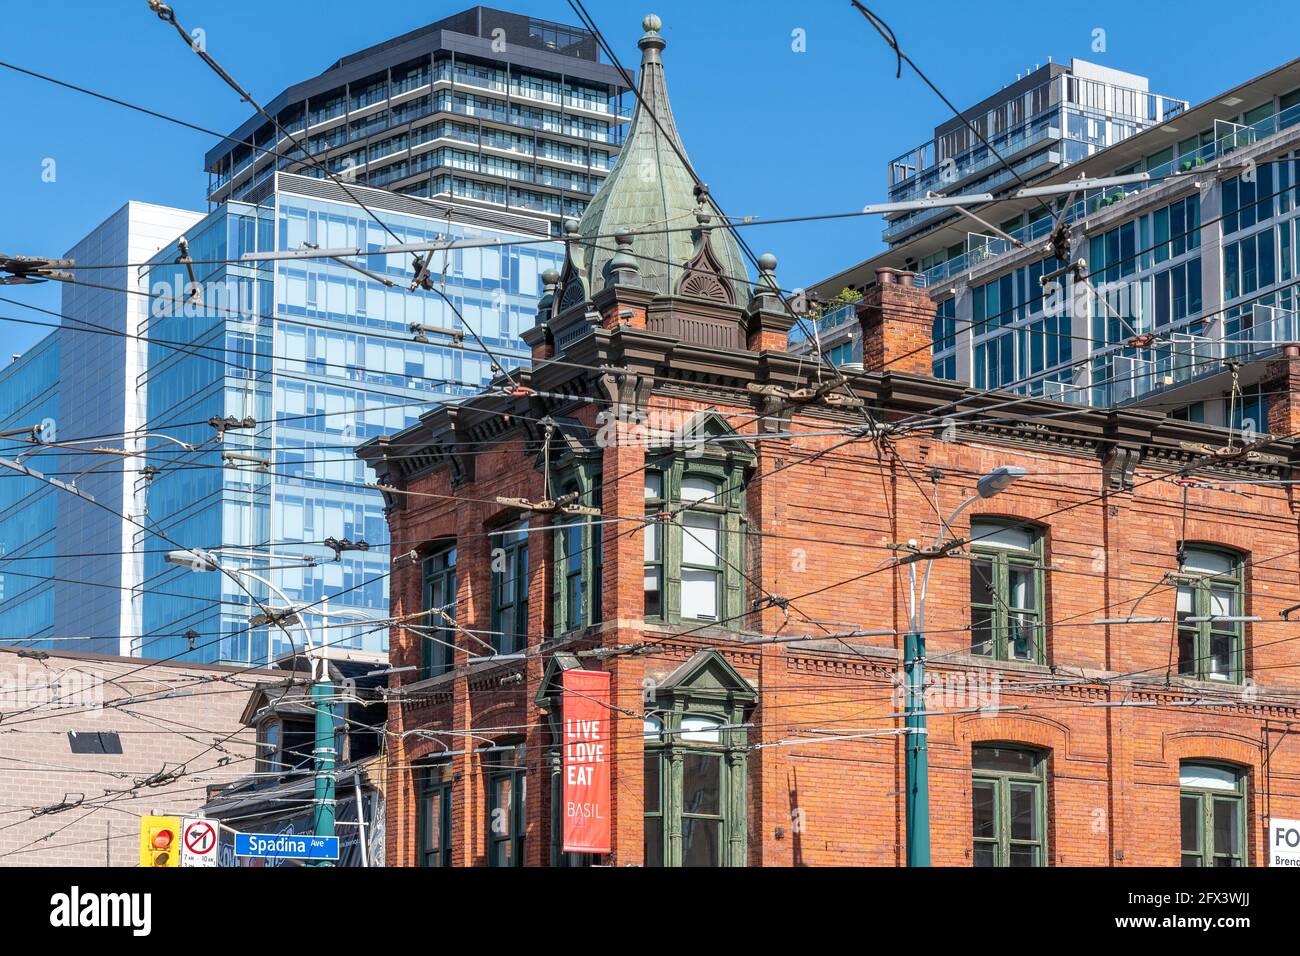 Edificio coloniale all'angolo tra Spadina Street e Queen Street West nel quartiere del centro di Toronto, Canada. Architettura urbana (continua Foto Stock